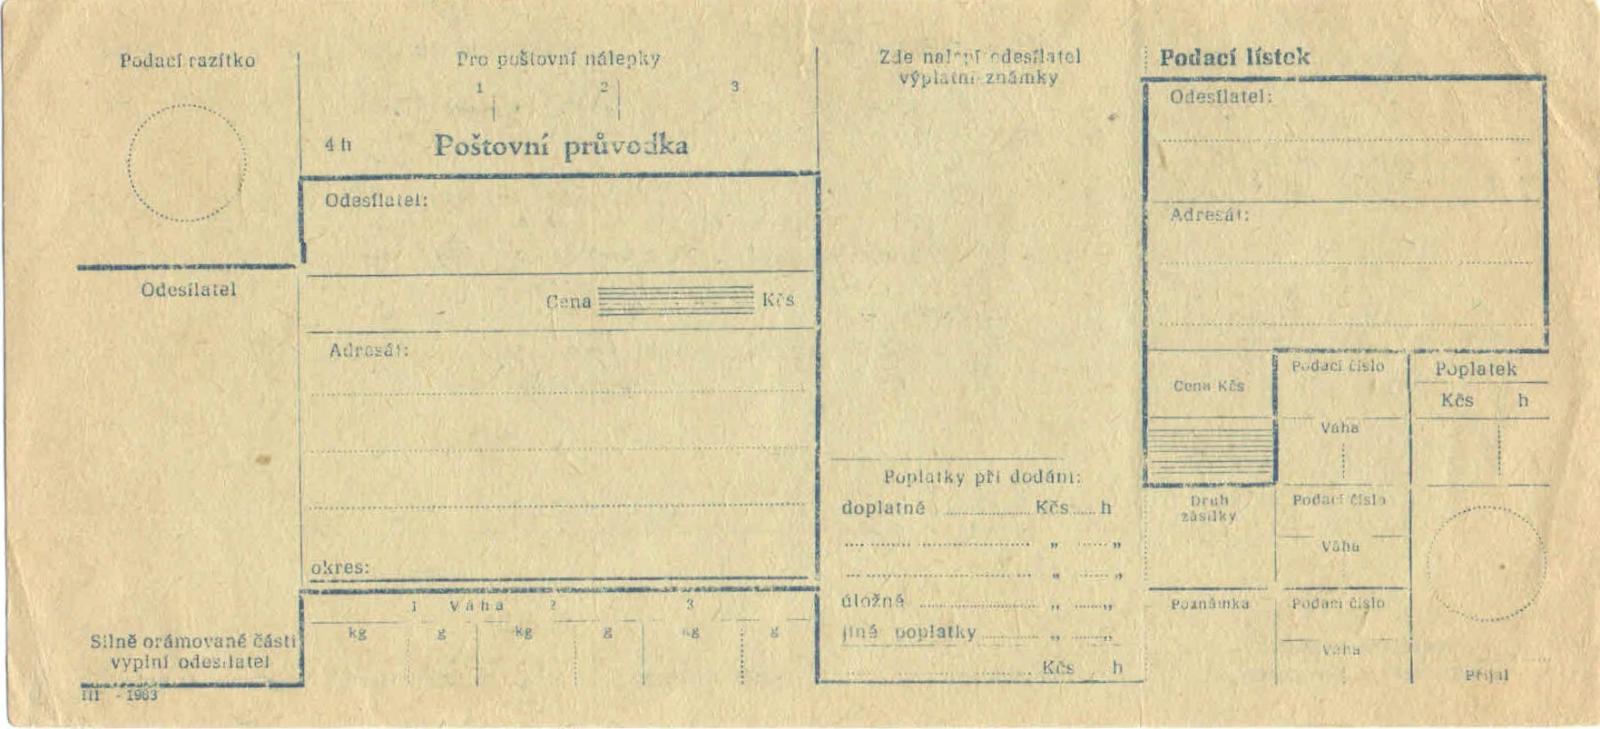 Poštová sprievodka -1963 - Filatelia